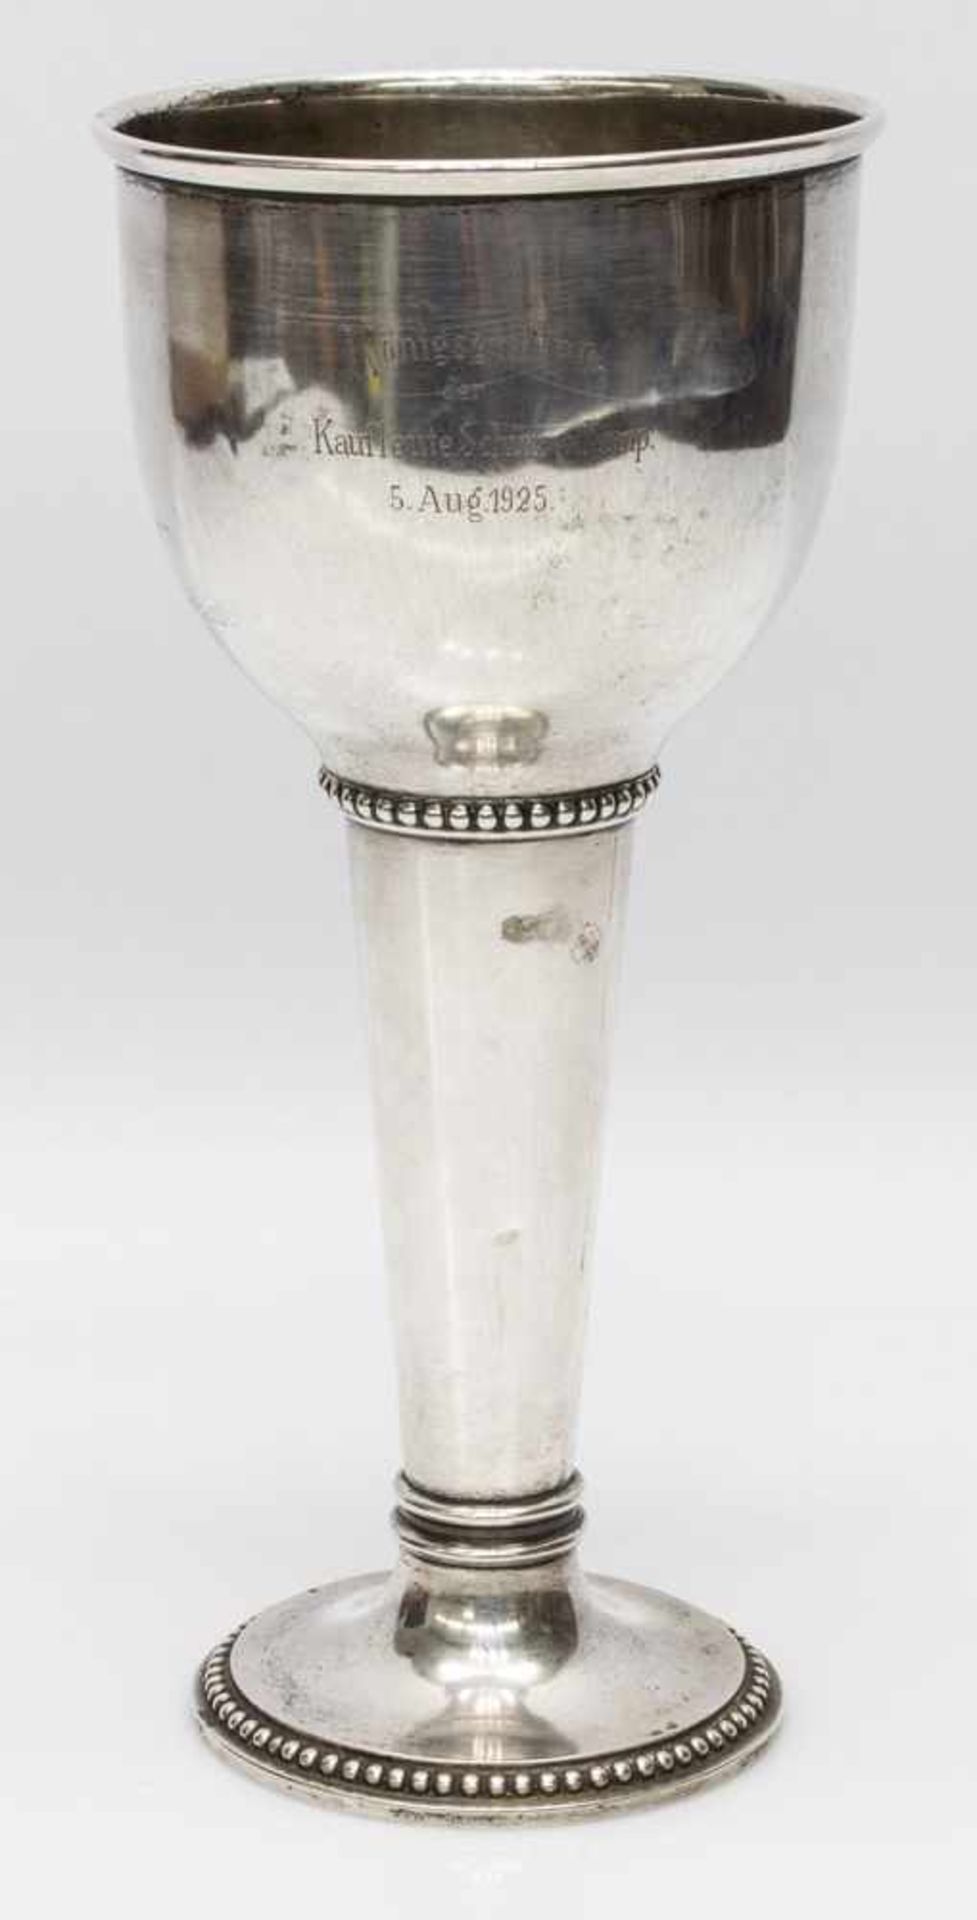 Schützen - PokalVorpommern um 1920er Jahre, 800er Silber mit Perlbanddekor, Inschrift Königsgewinn